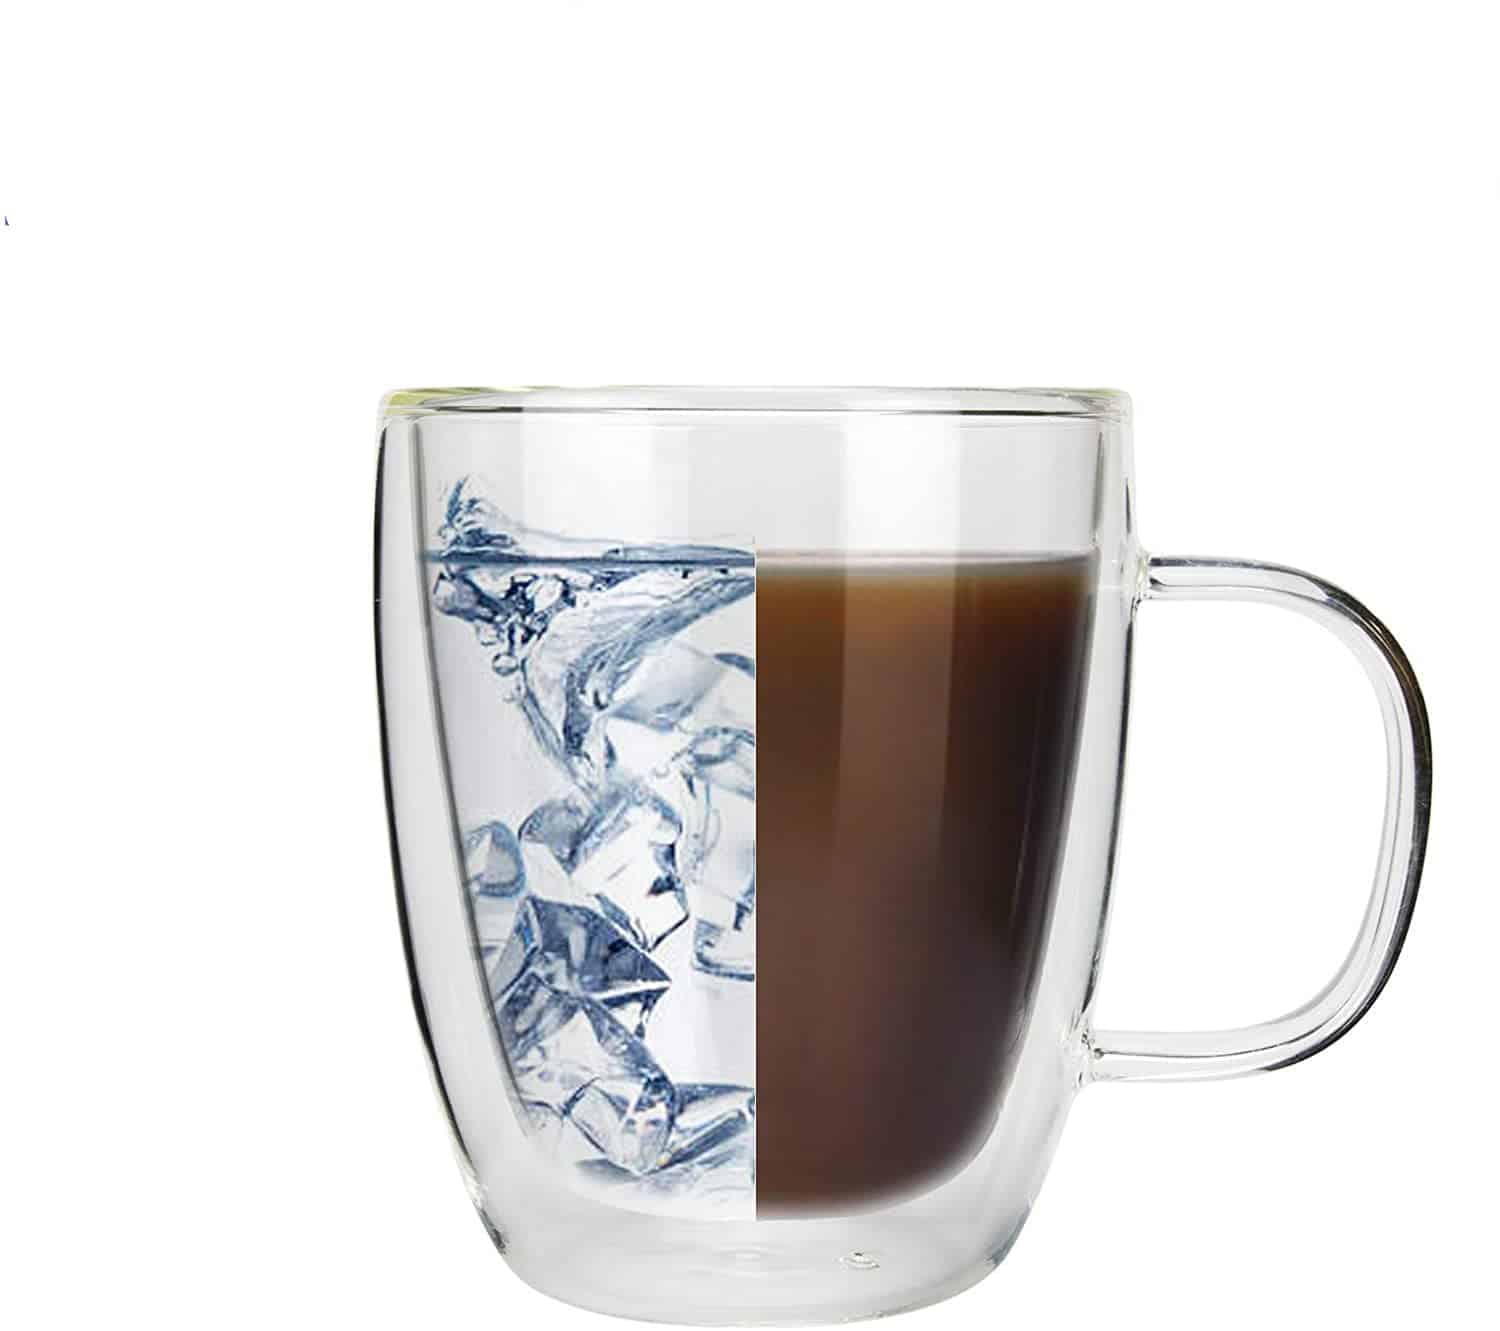 Mini Bodum Double Wall Glass Design Espresso Cup Anti-Scald Handle